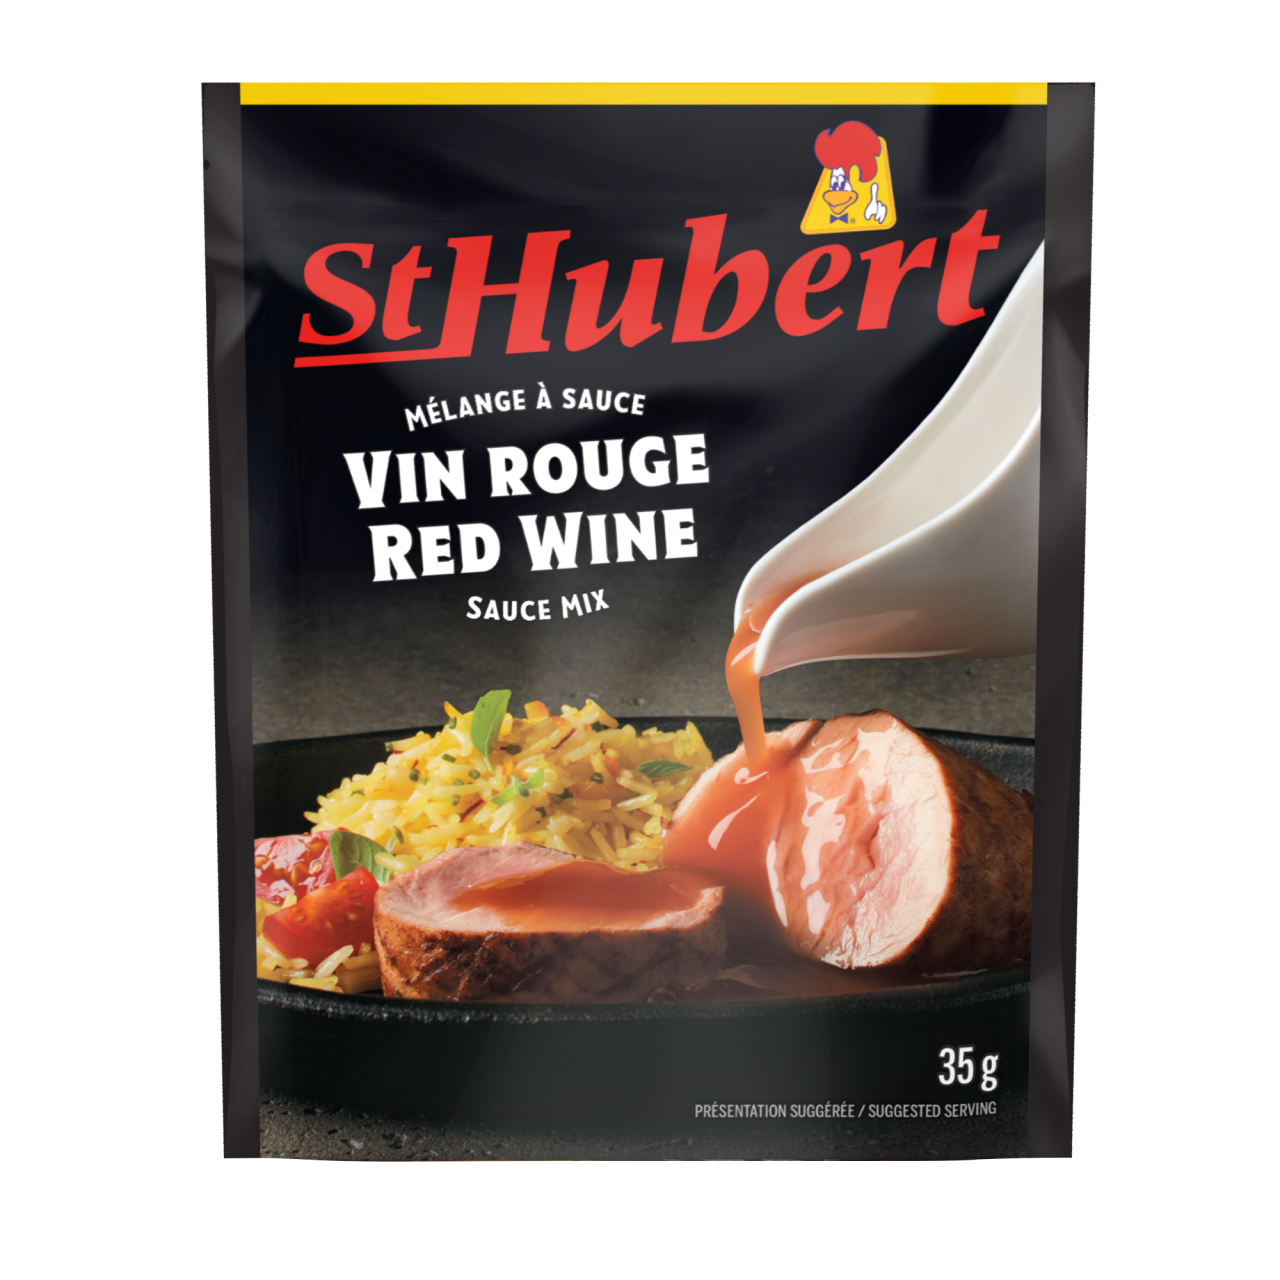 St-Hubert red wine gravy mix